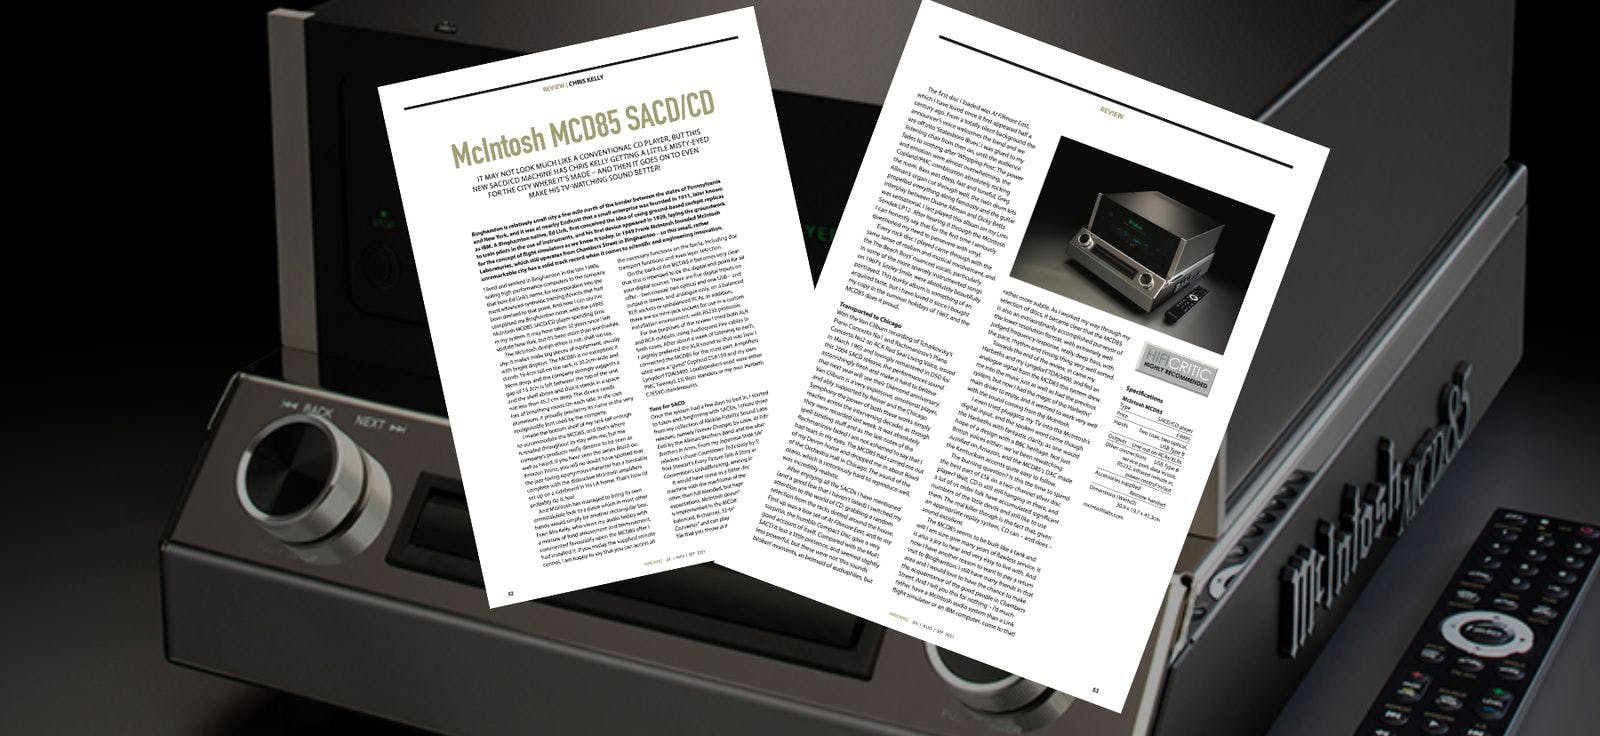 HIFICRITIC reviews the new McIntosh MCD85 SACD/CD player